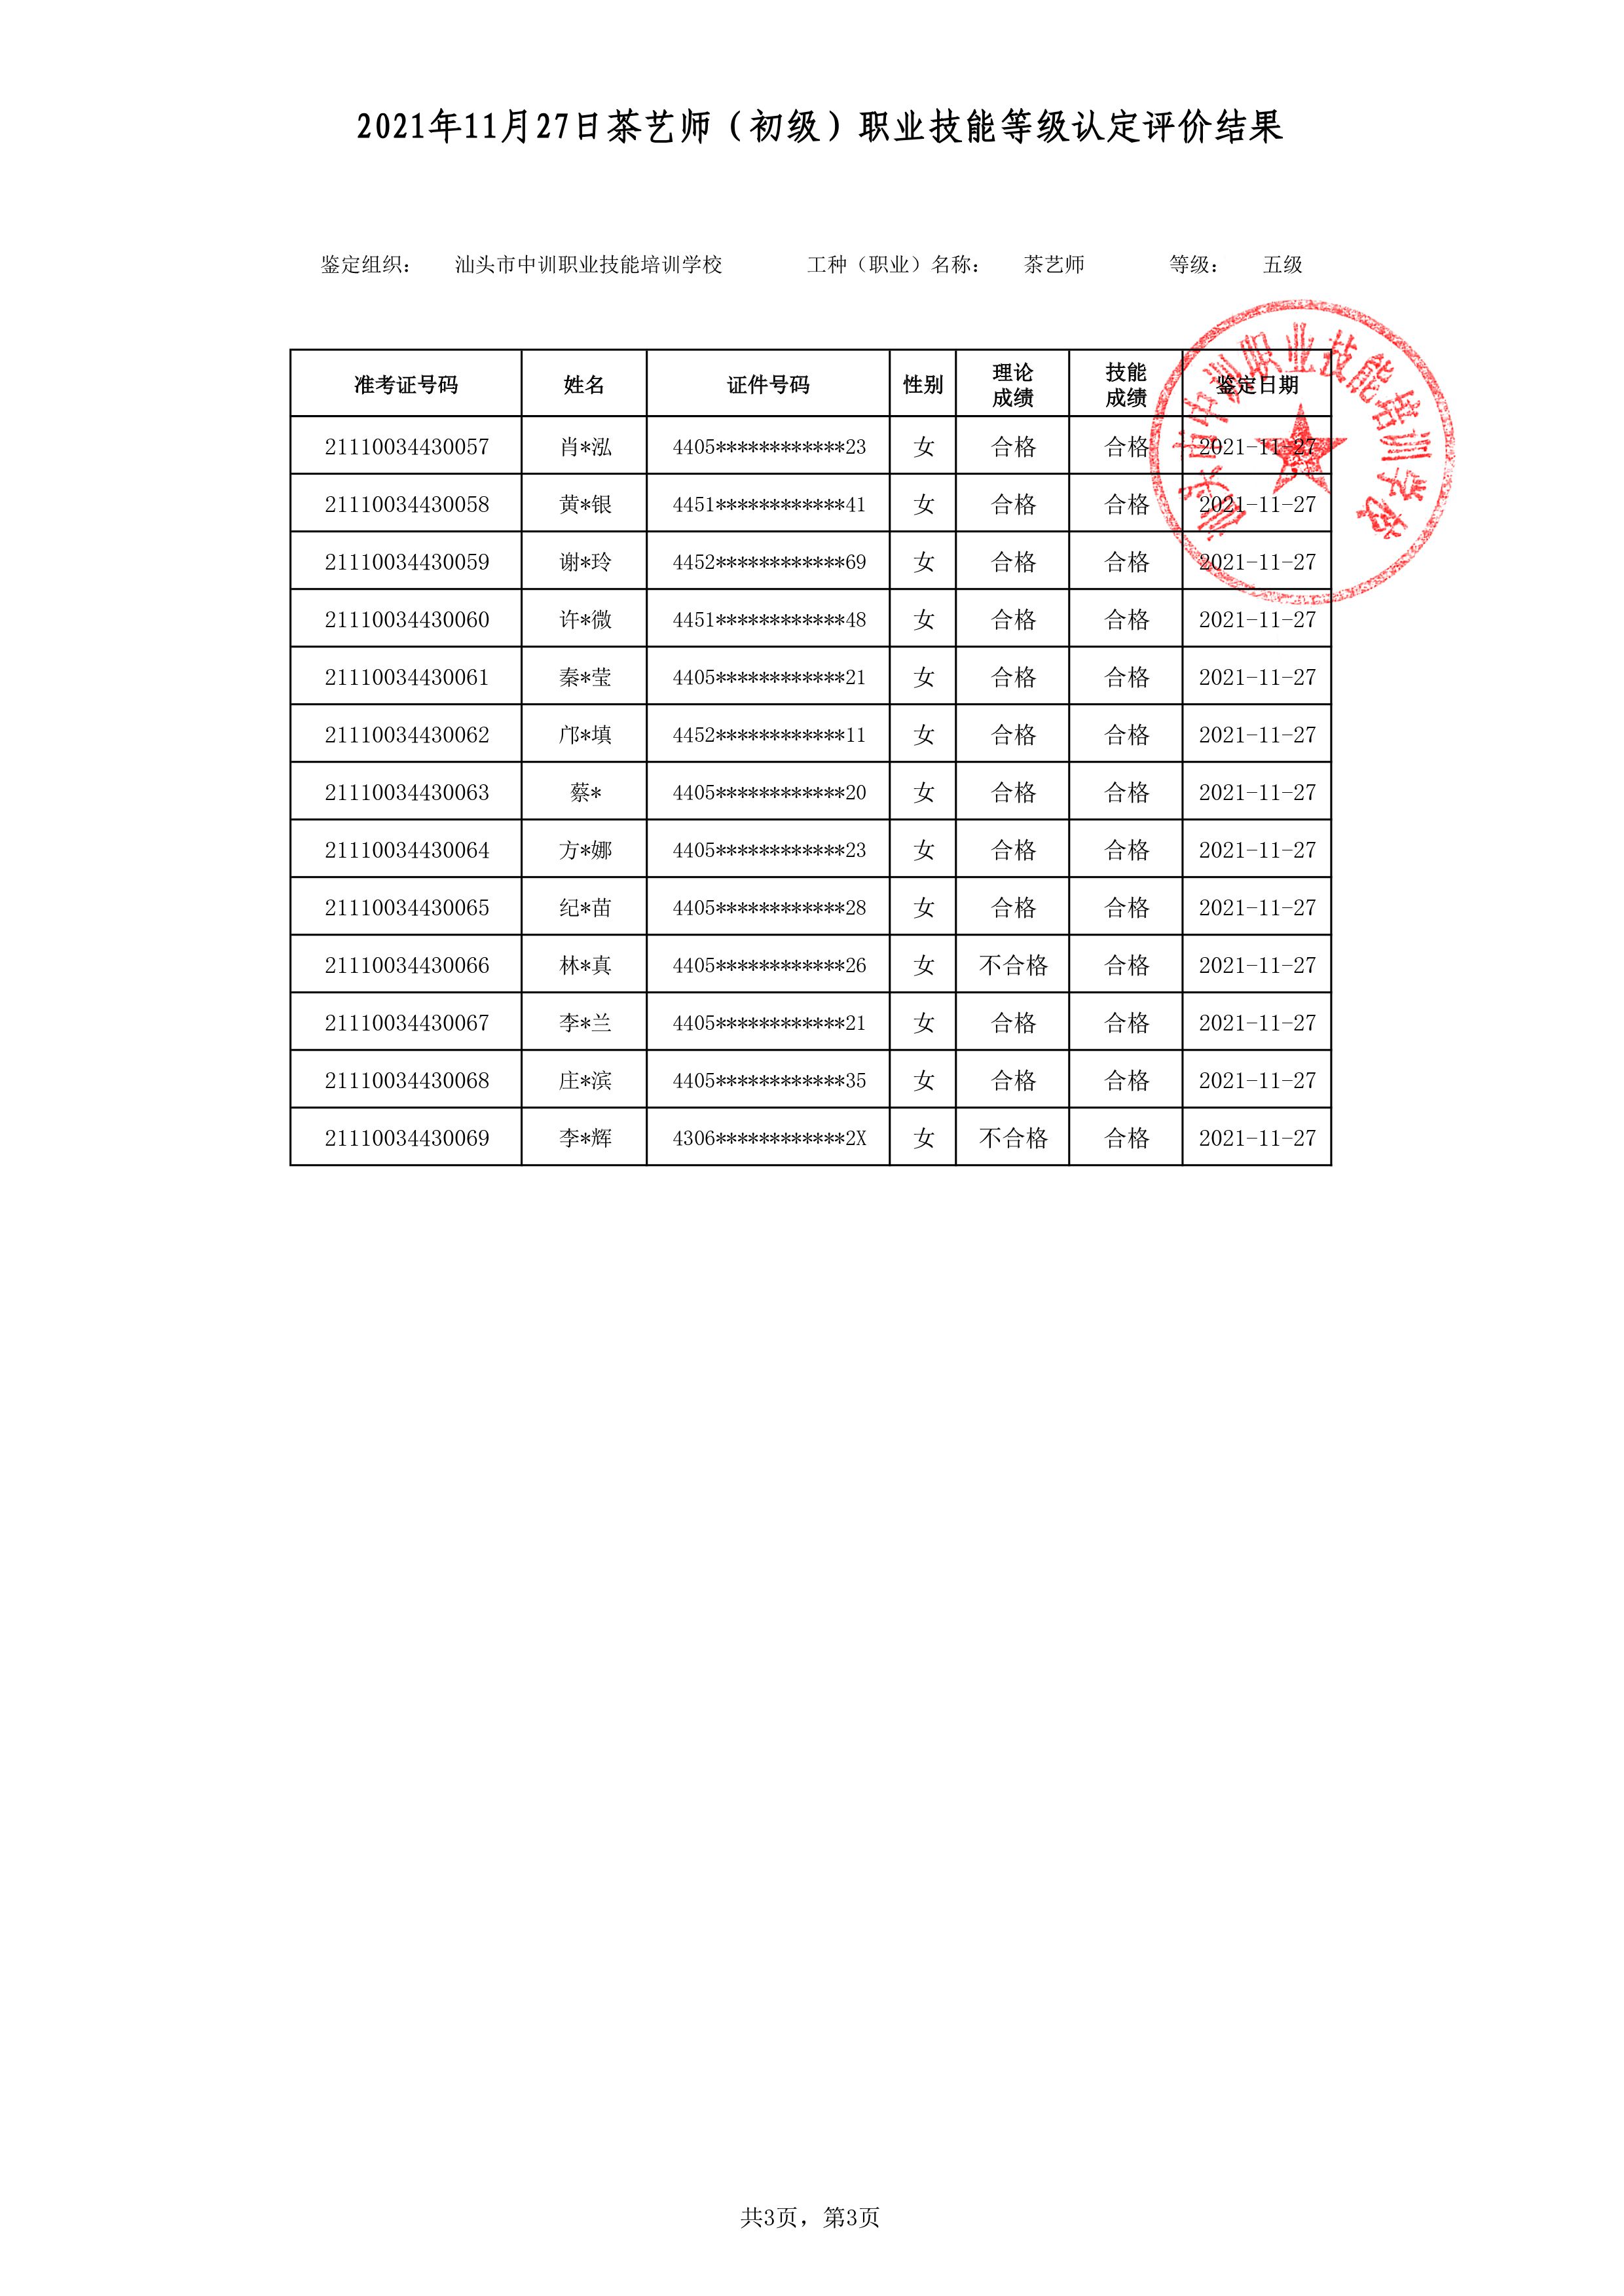 21-11-27五级茶艺师考试鉴定名册表-3 副本.jpg